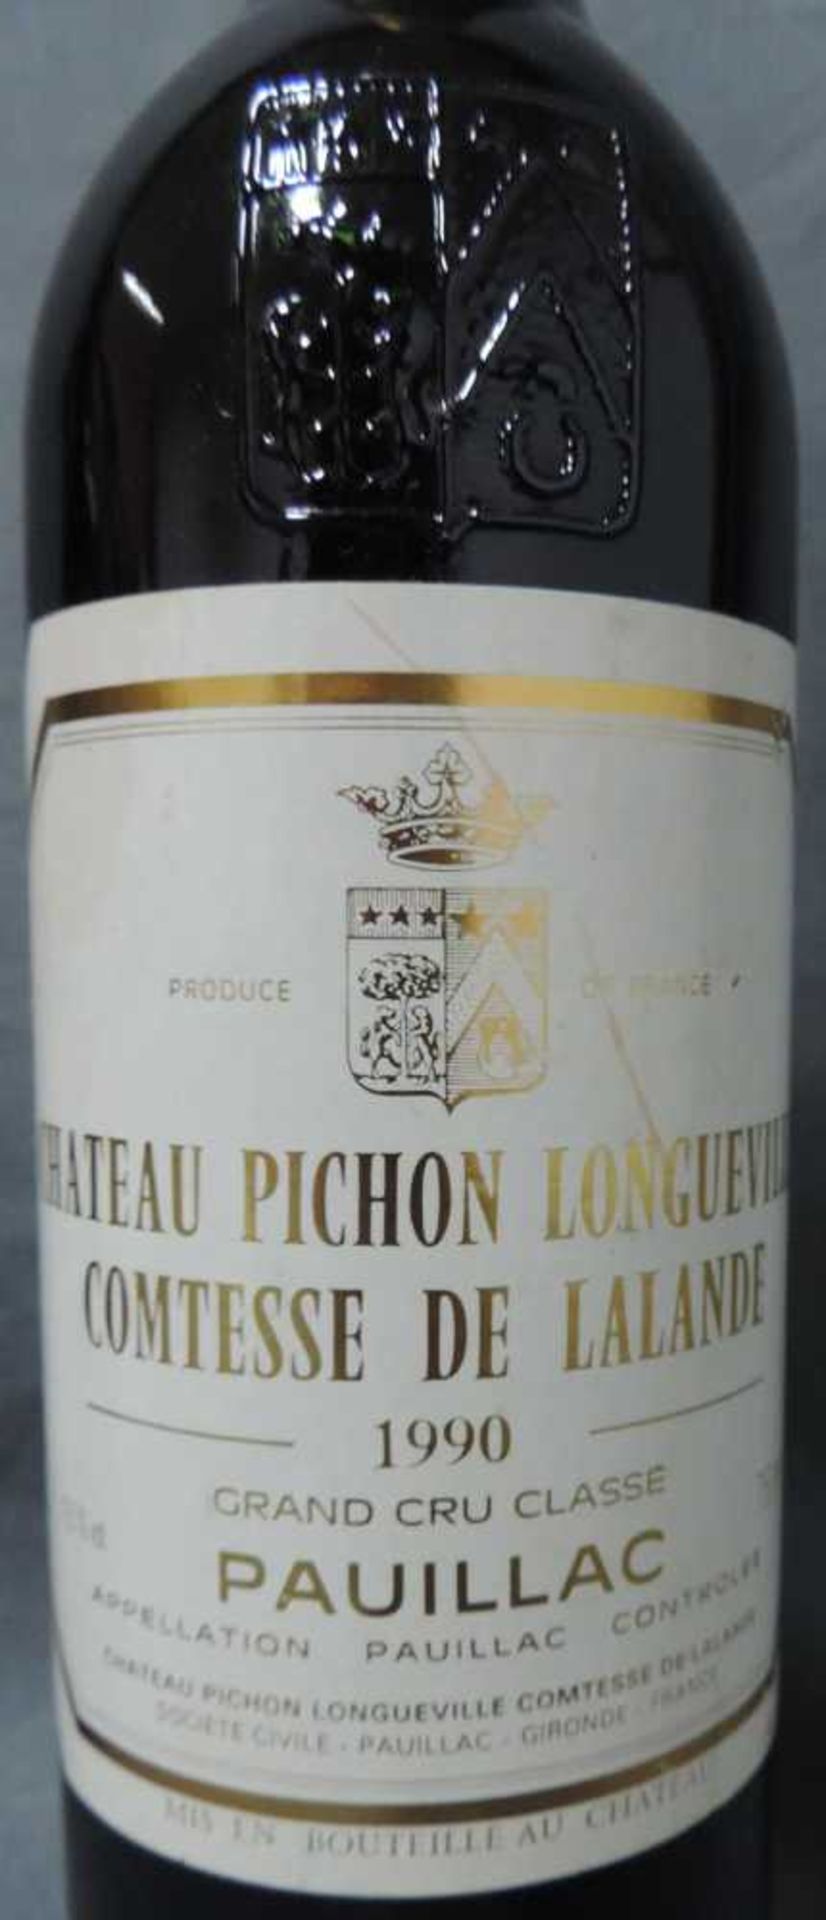 1990 Chateaux Pichon Longueville Comtesse de Lalande, Pauillac. Grand Cru Classé. Dazu 1983 - Image 2 of 4